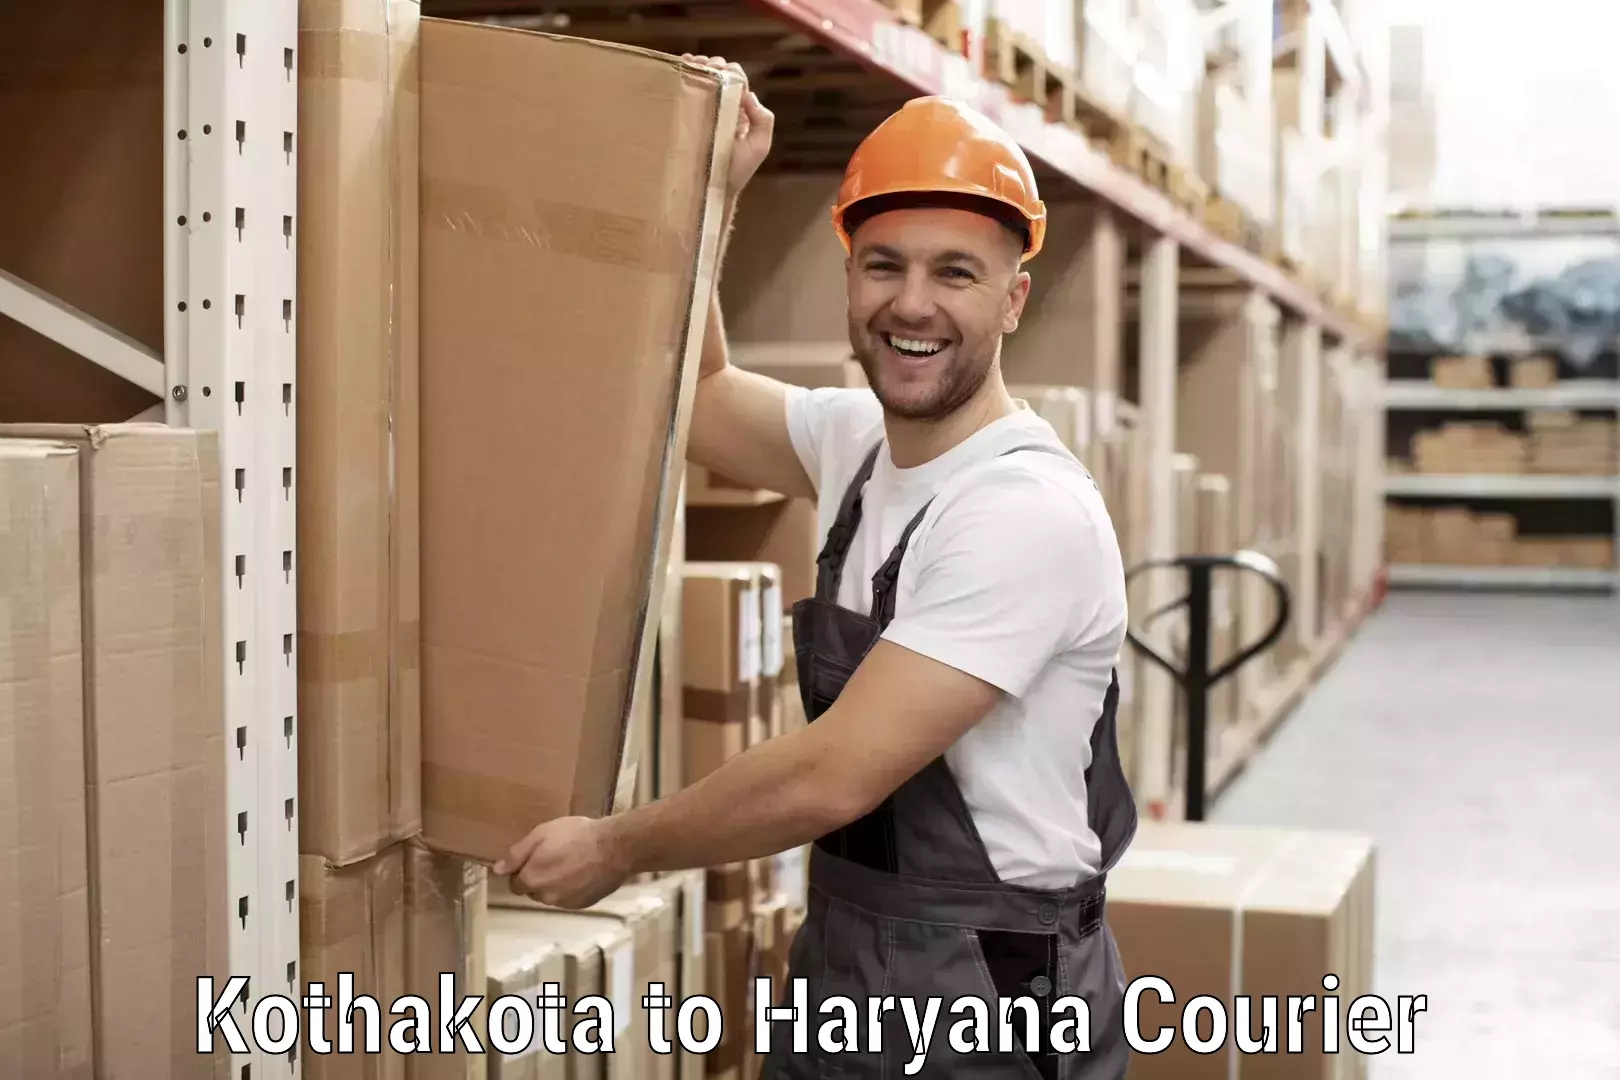 Seamless shipping service Kothakota to NCR Haryana